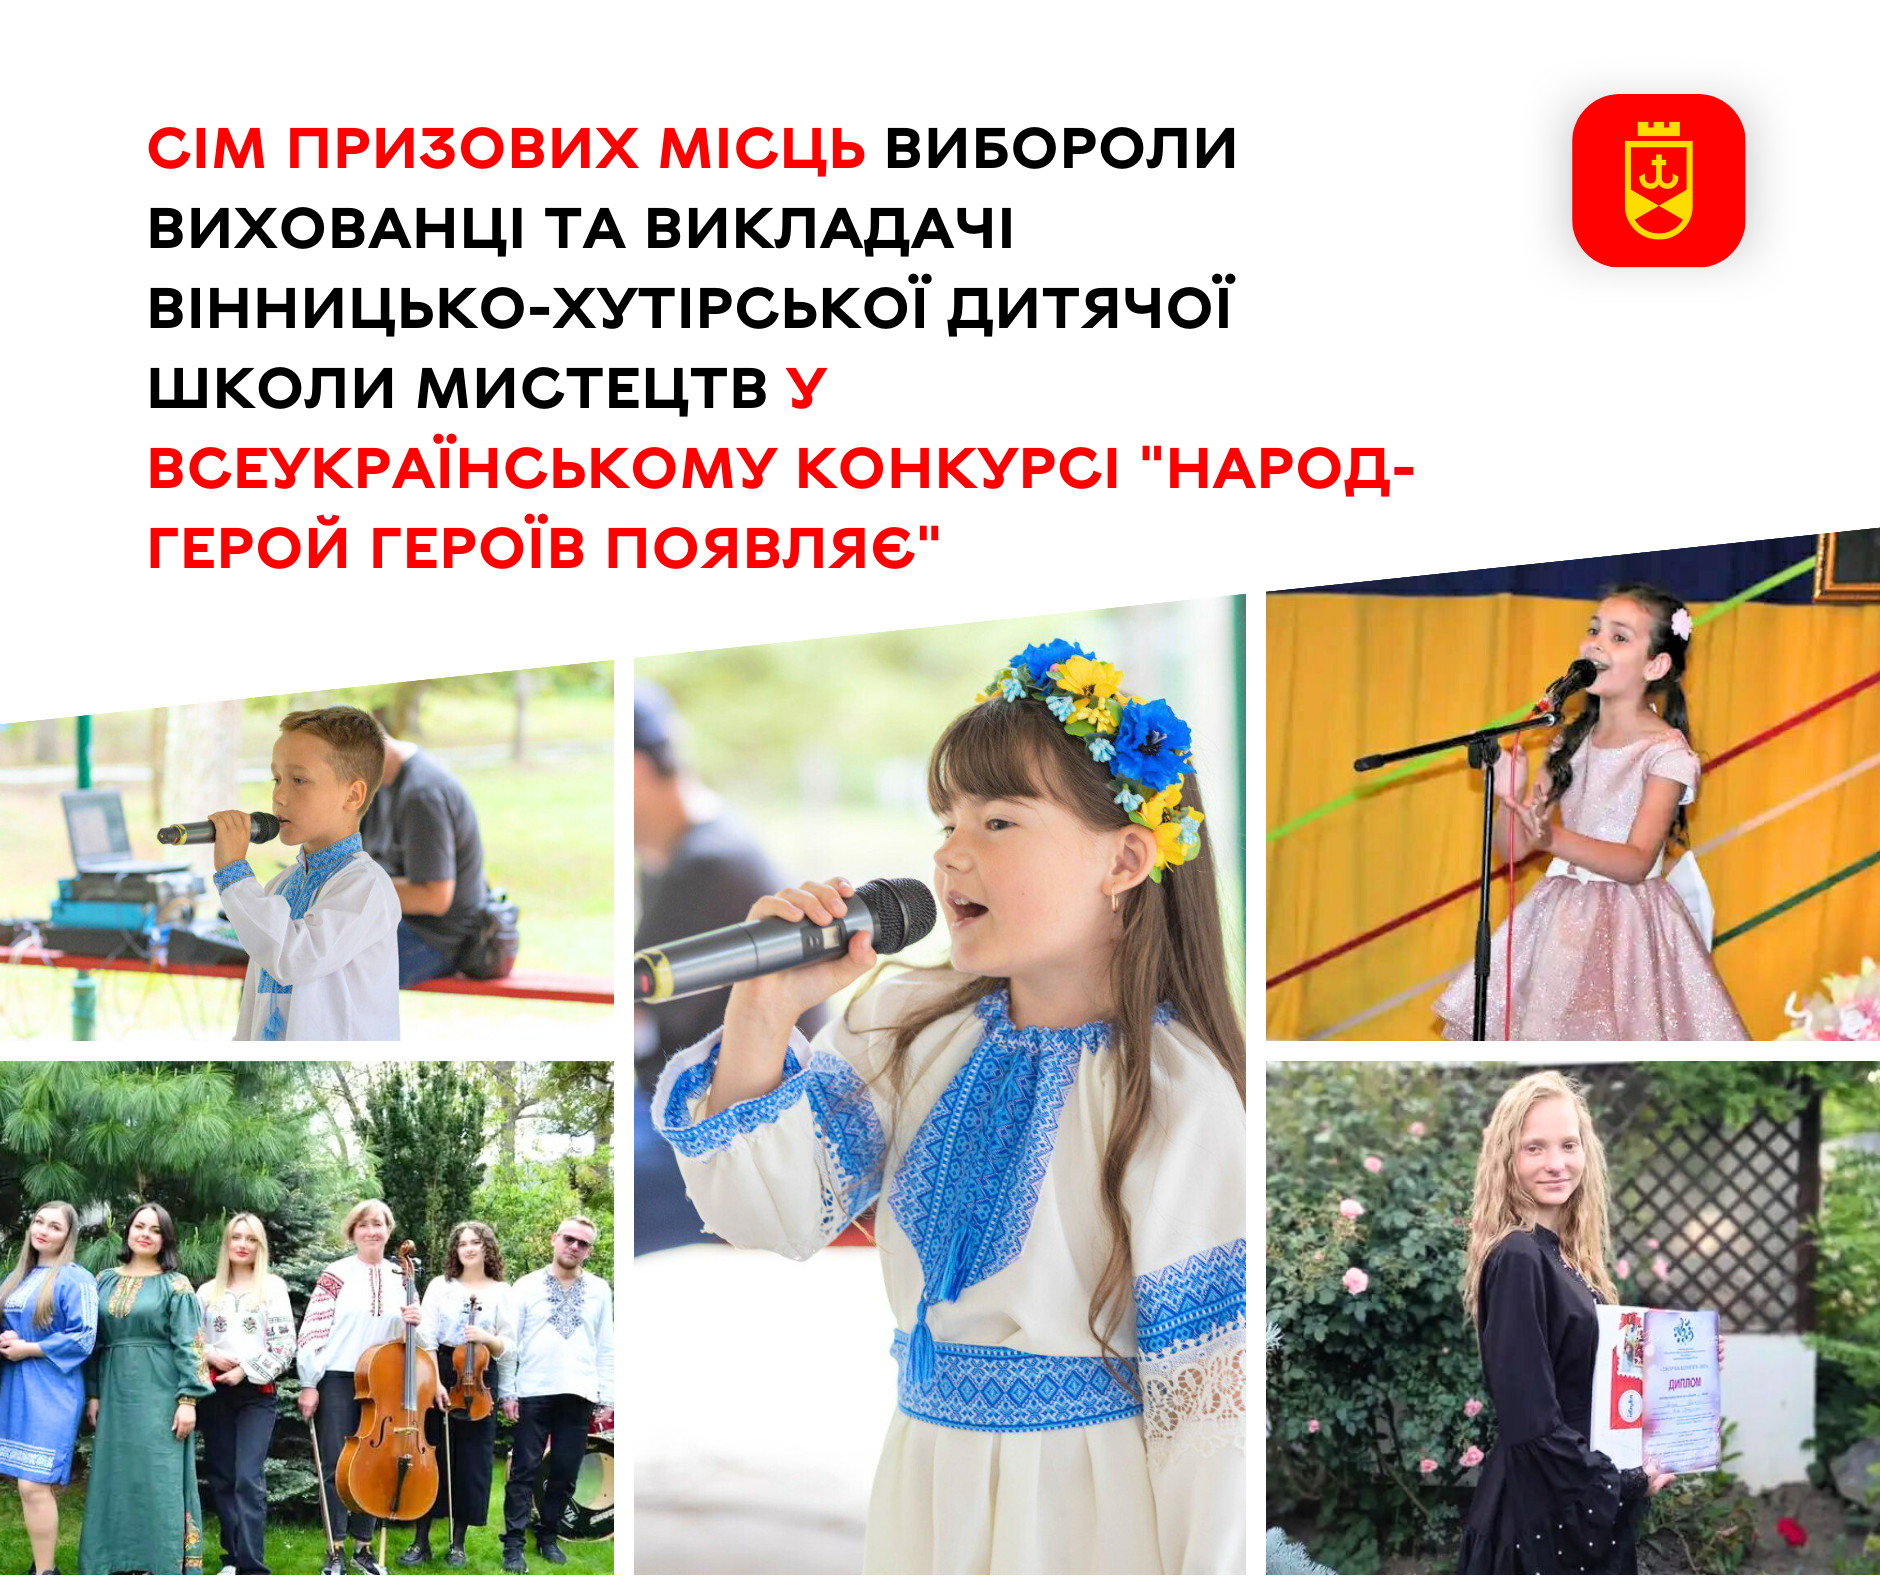 Сім призових місць вибороли вихованці  та викладачі Вінницько-Хутірської дитячої школи мистецтв у Всеукраїнському конкурсі